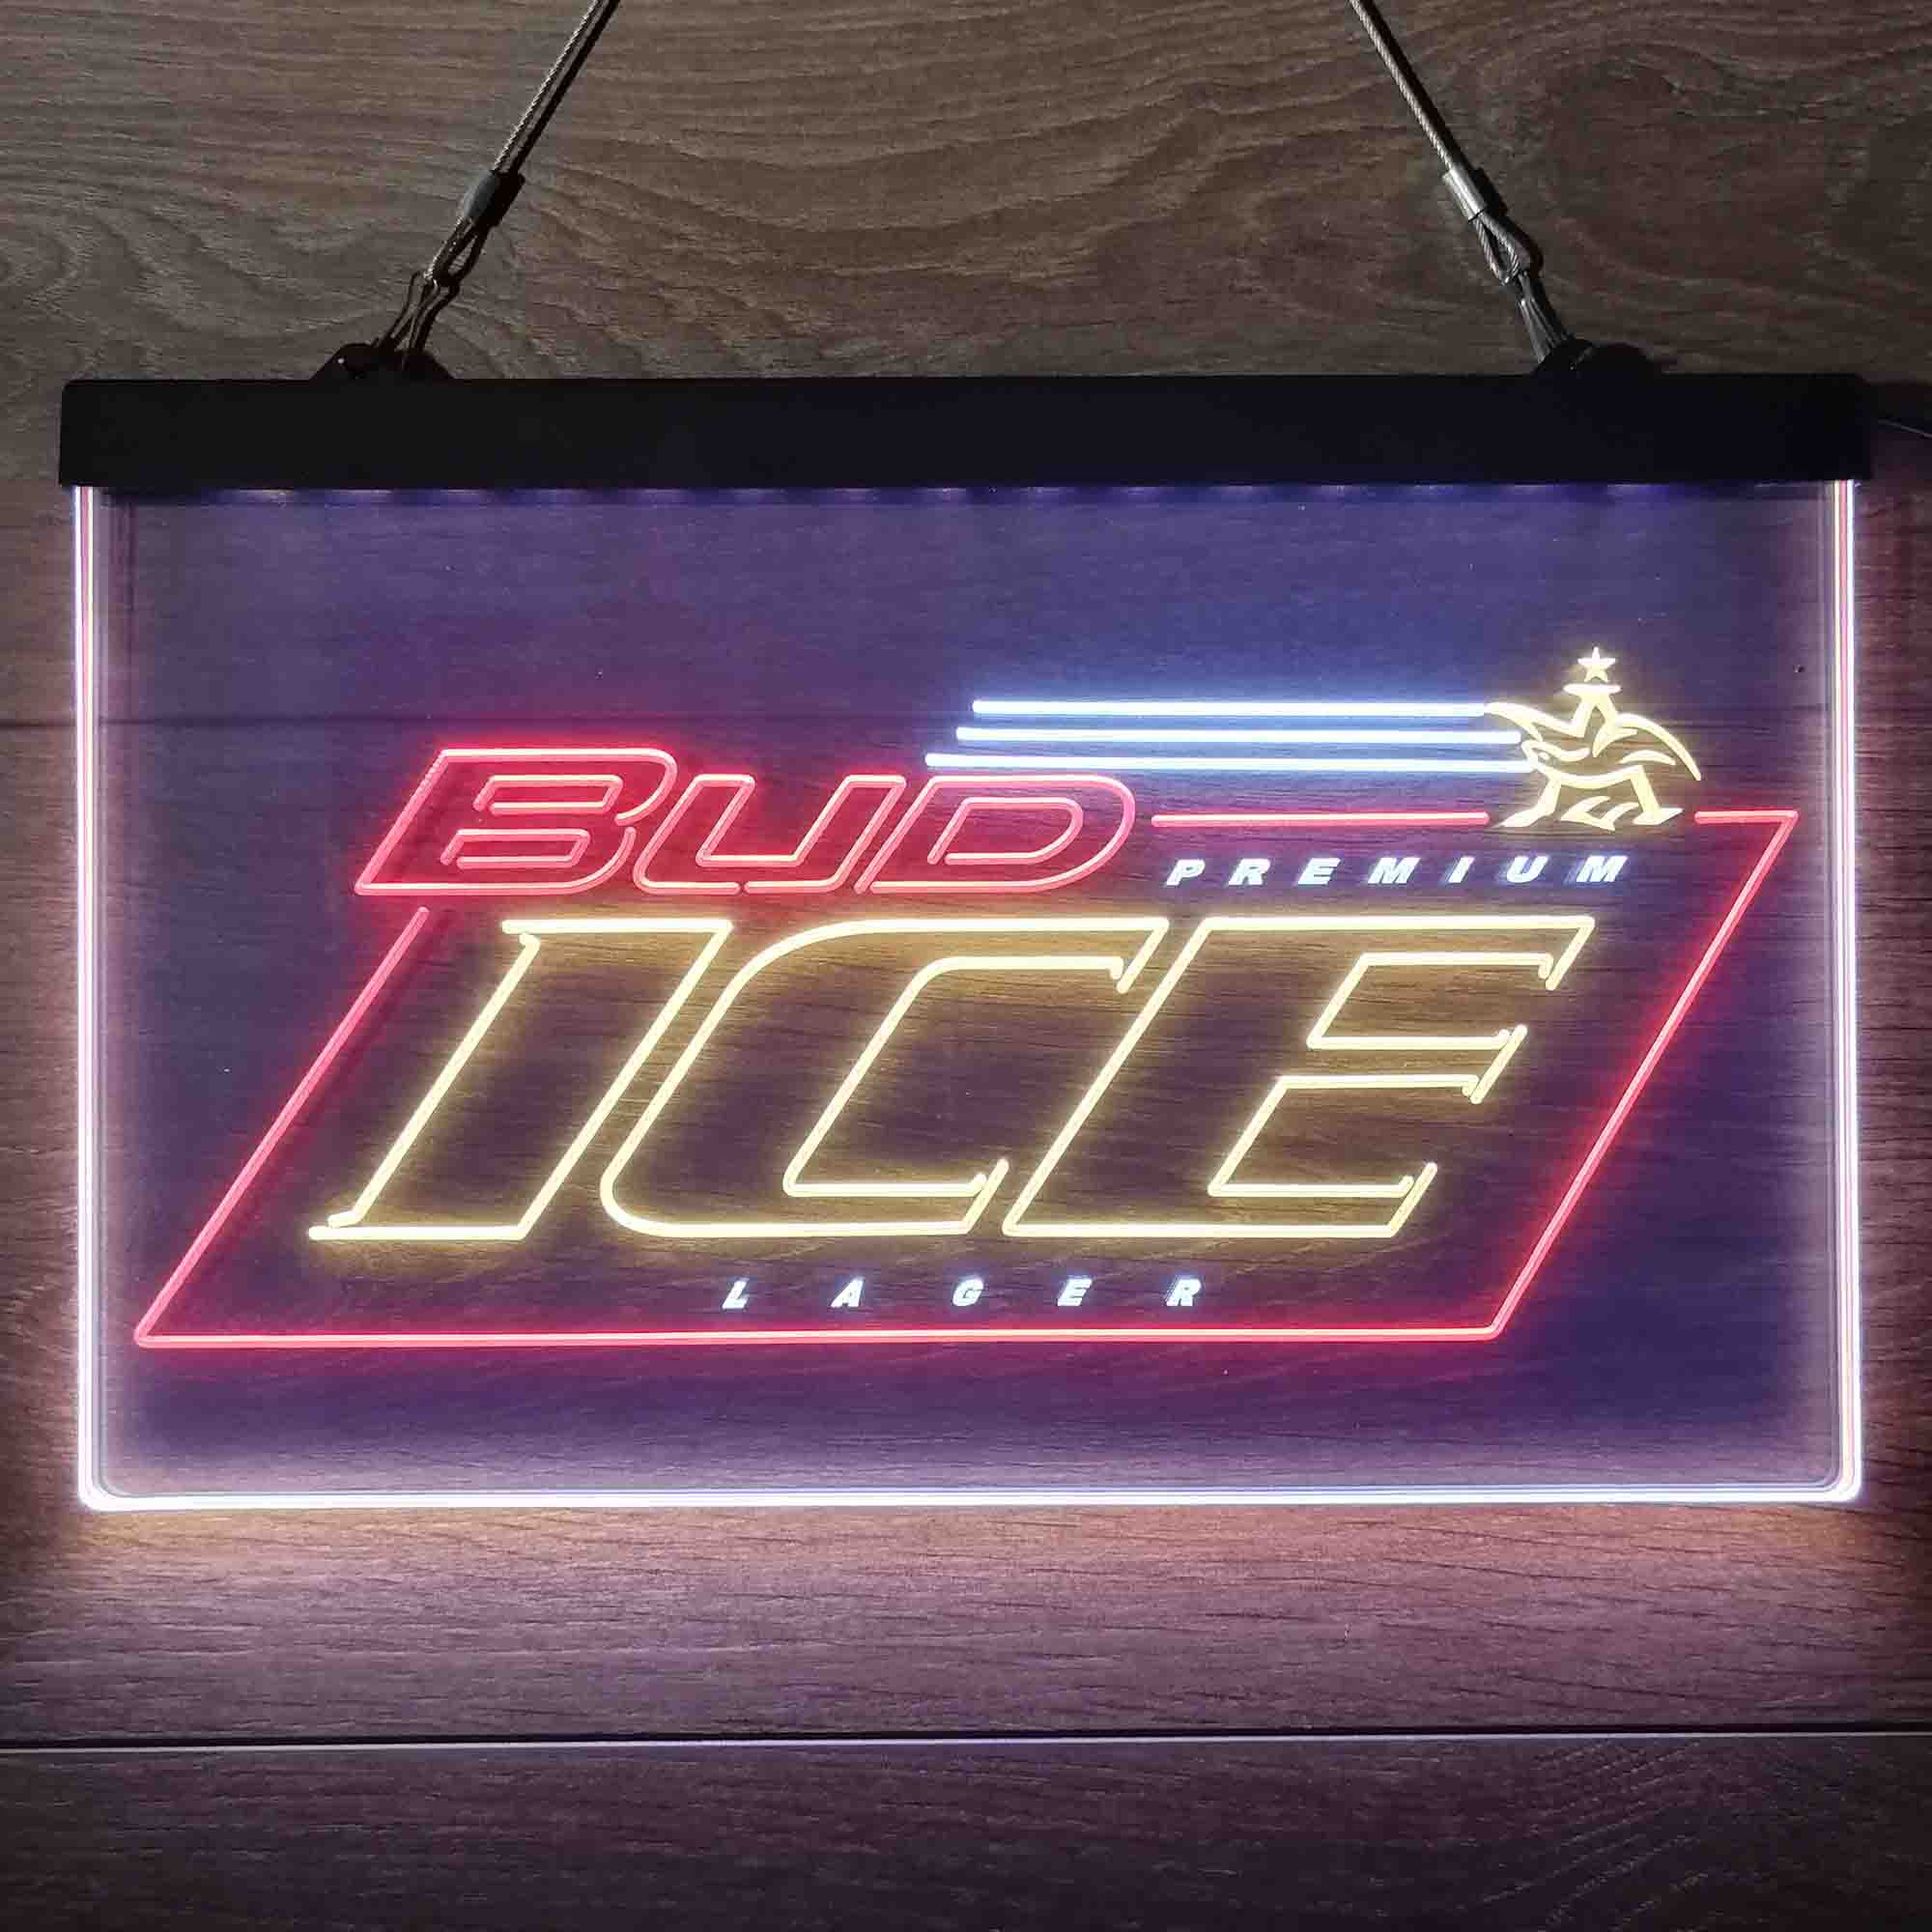 Bud Ice Larger Neon-Like LED Sign